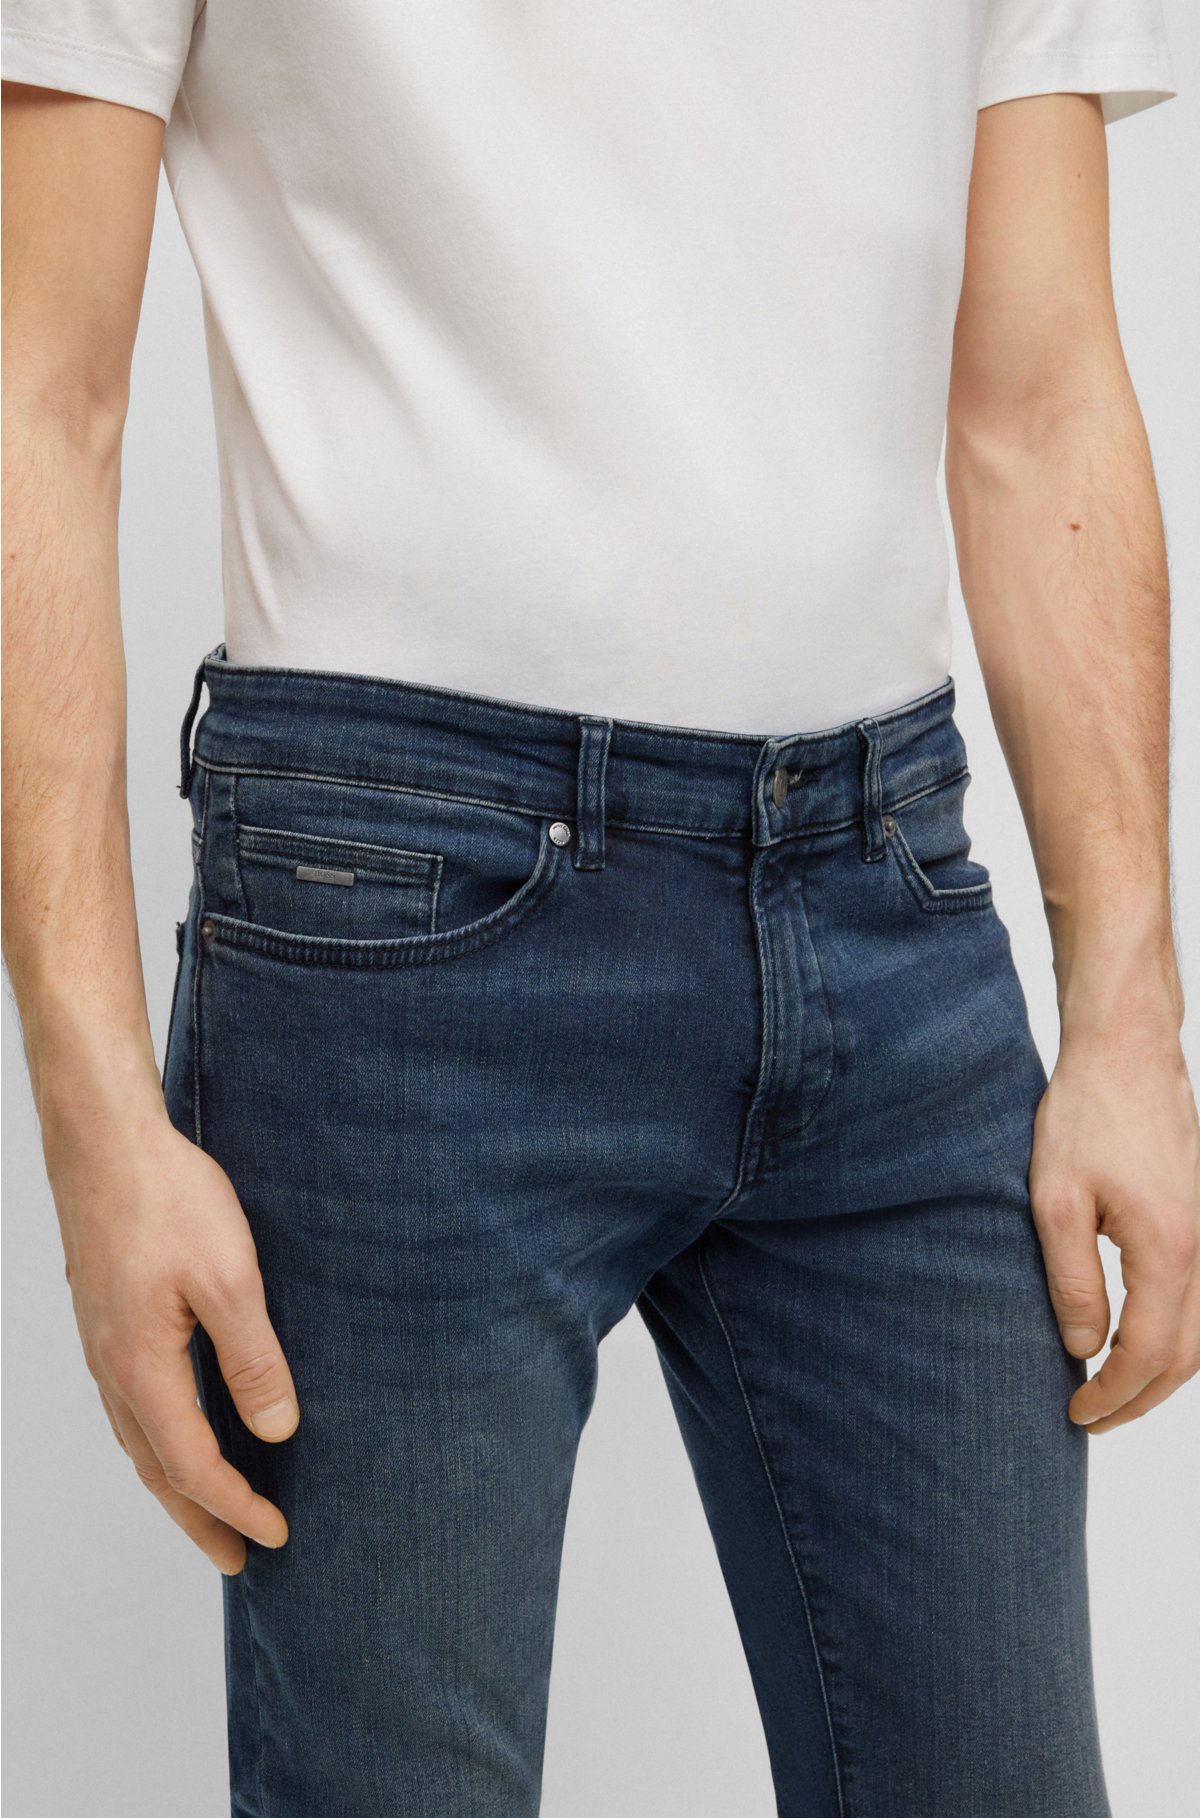 BOSS - Slim-fit jeans in blue super-stretch denim